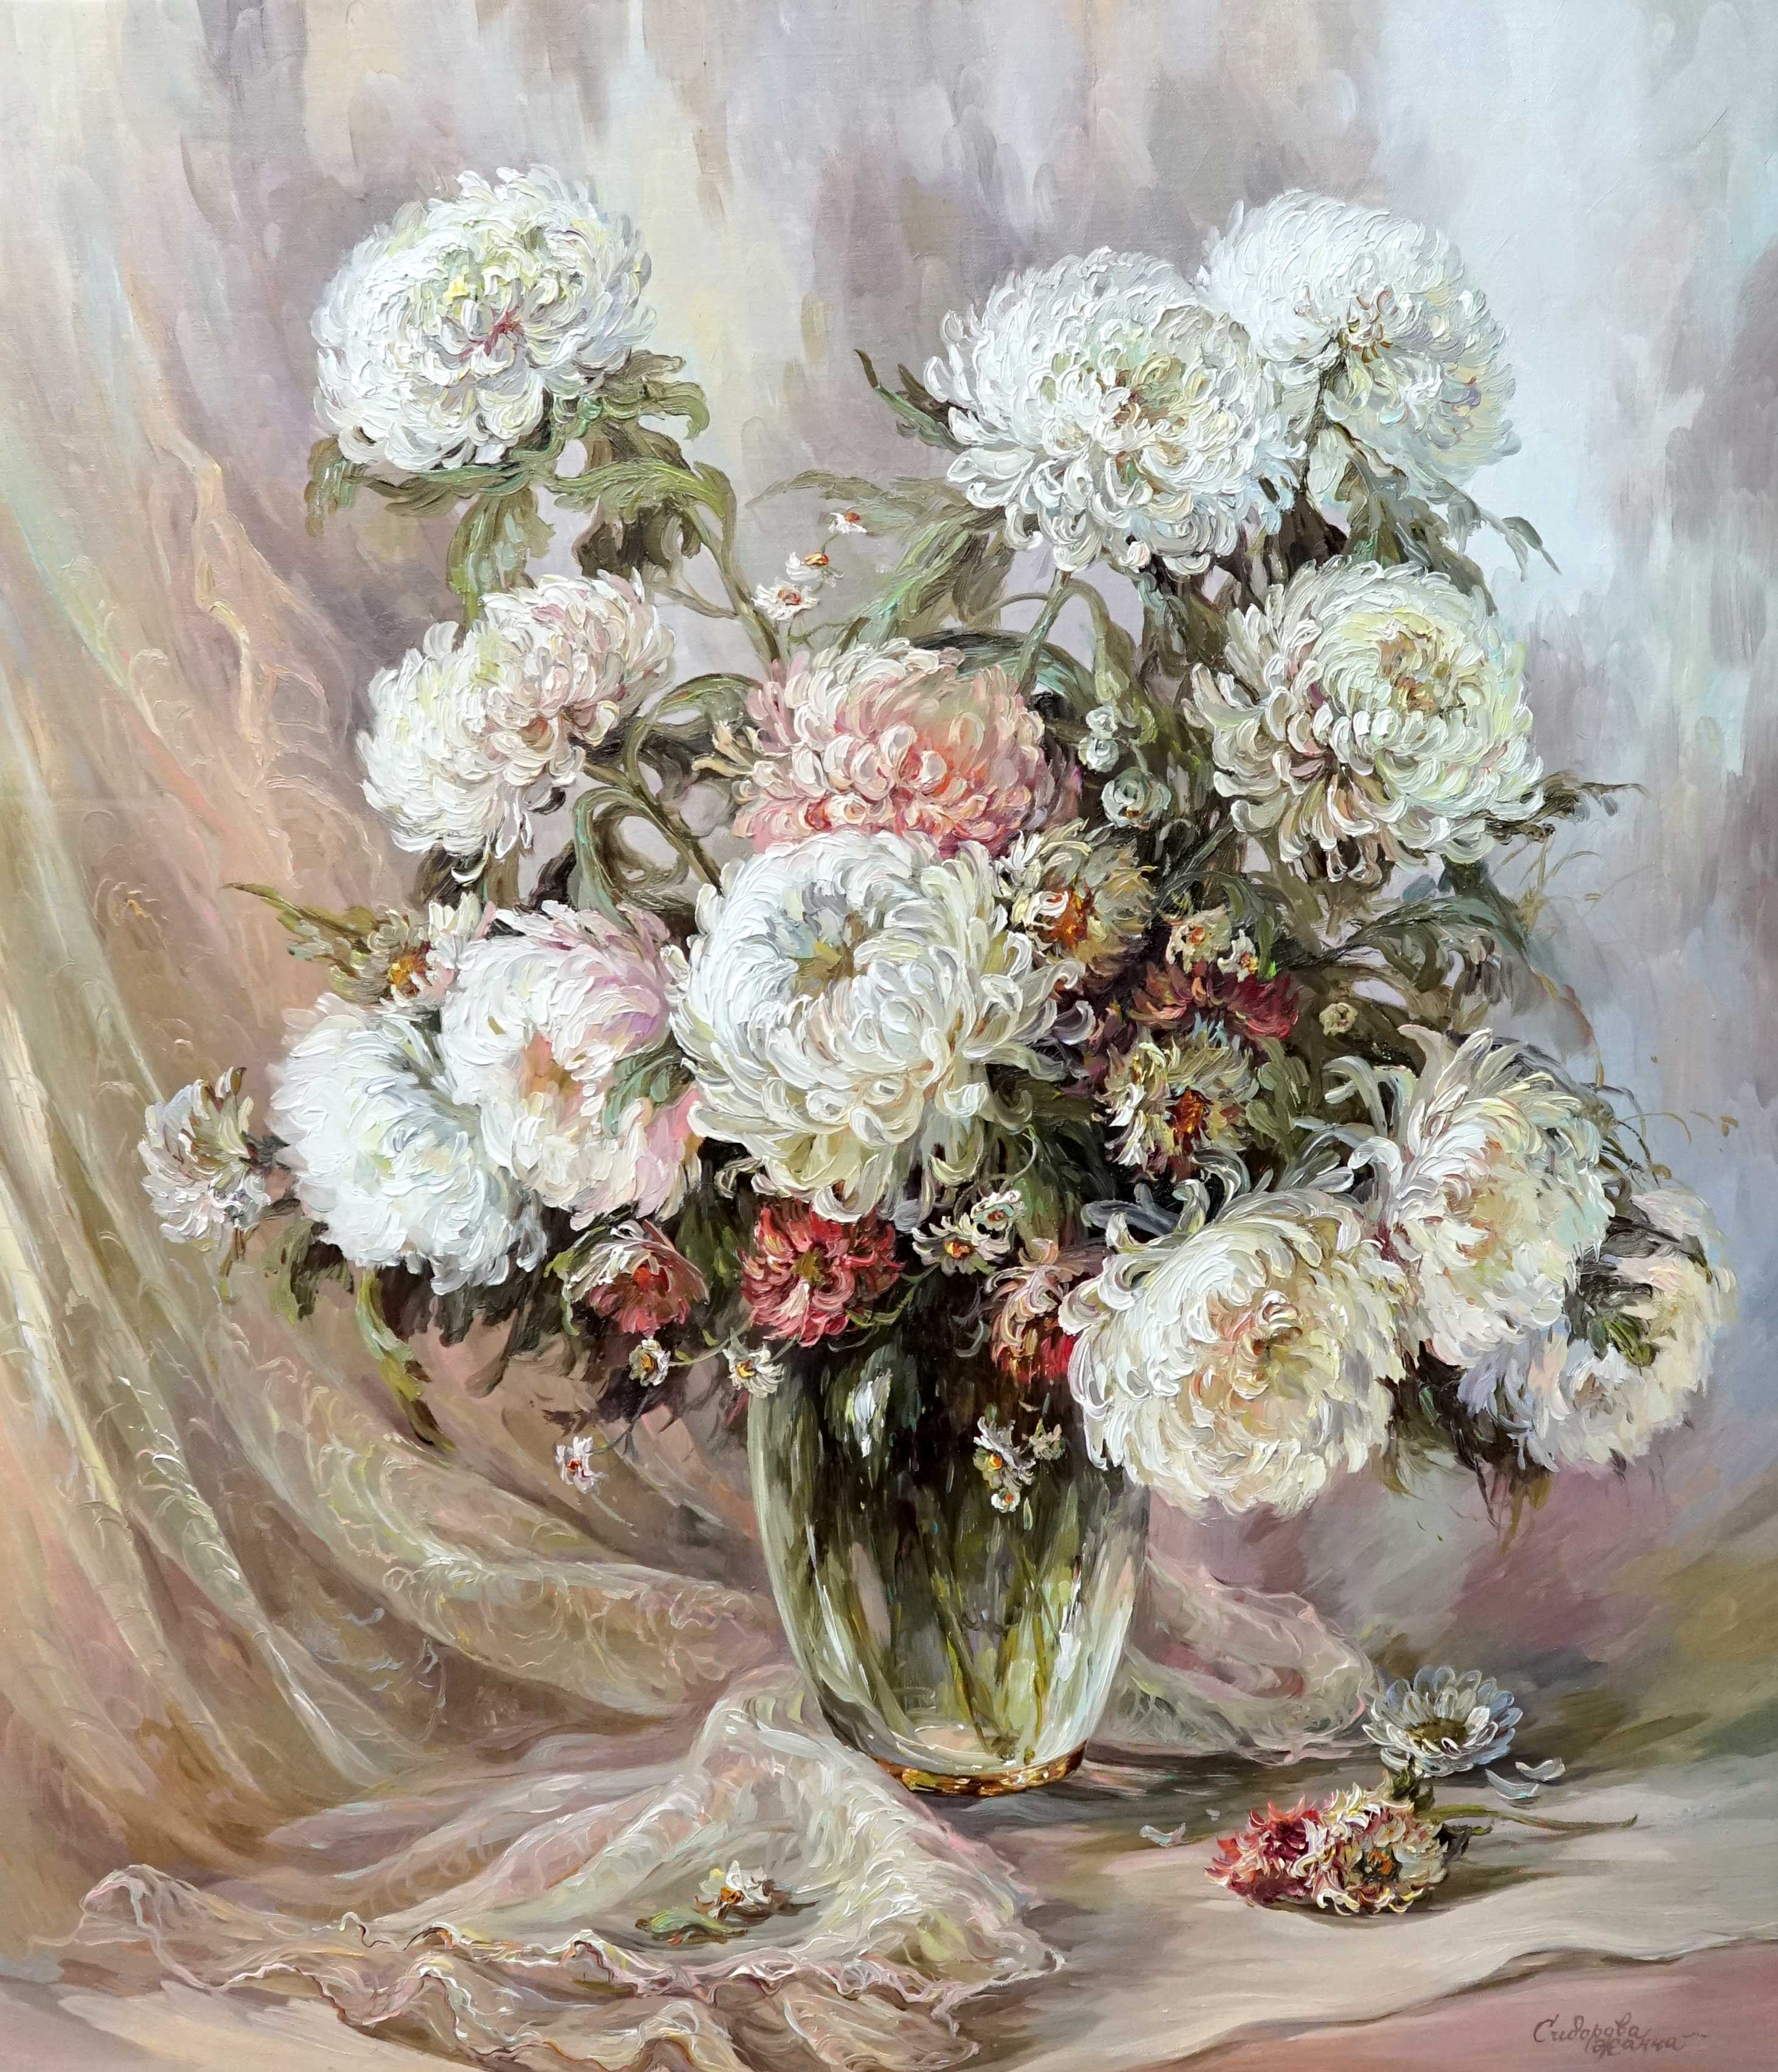 Chrysanthemum, Zhanna Sidorova, Buy the painting Oil